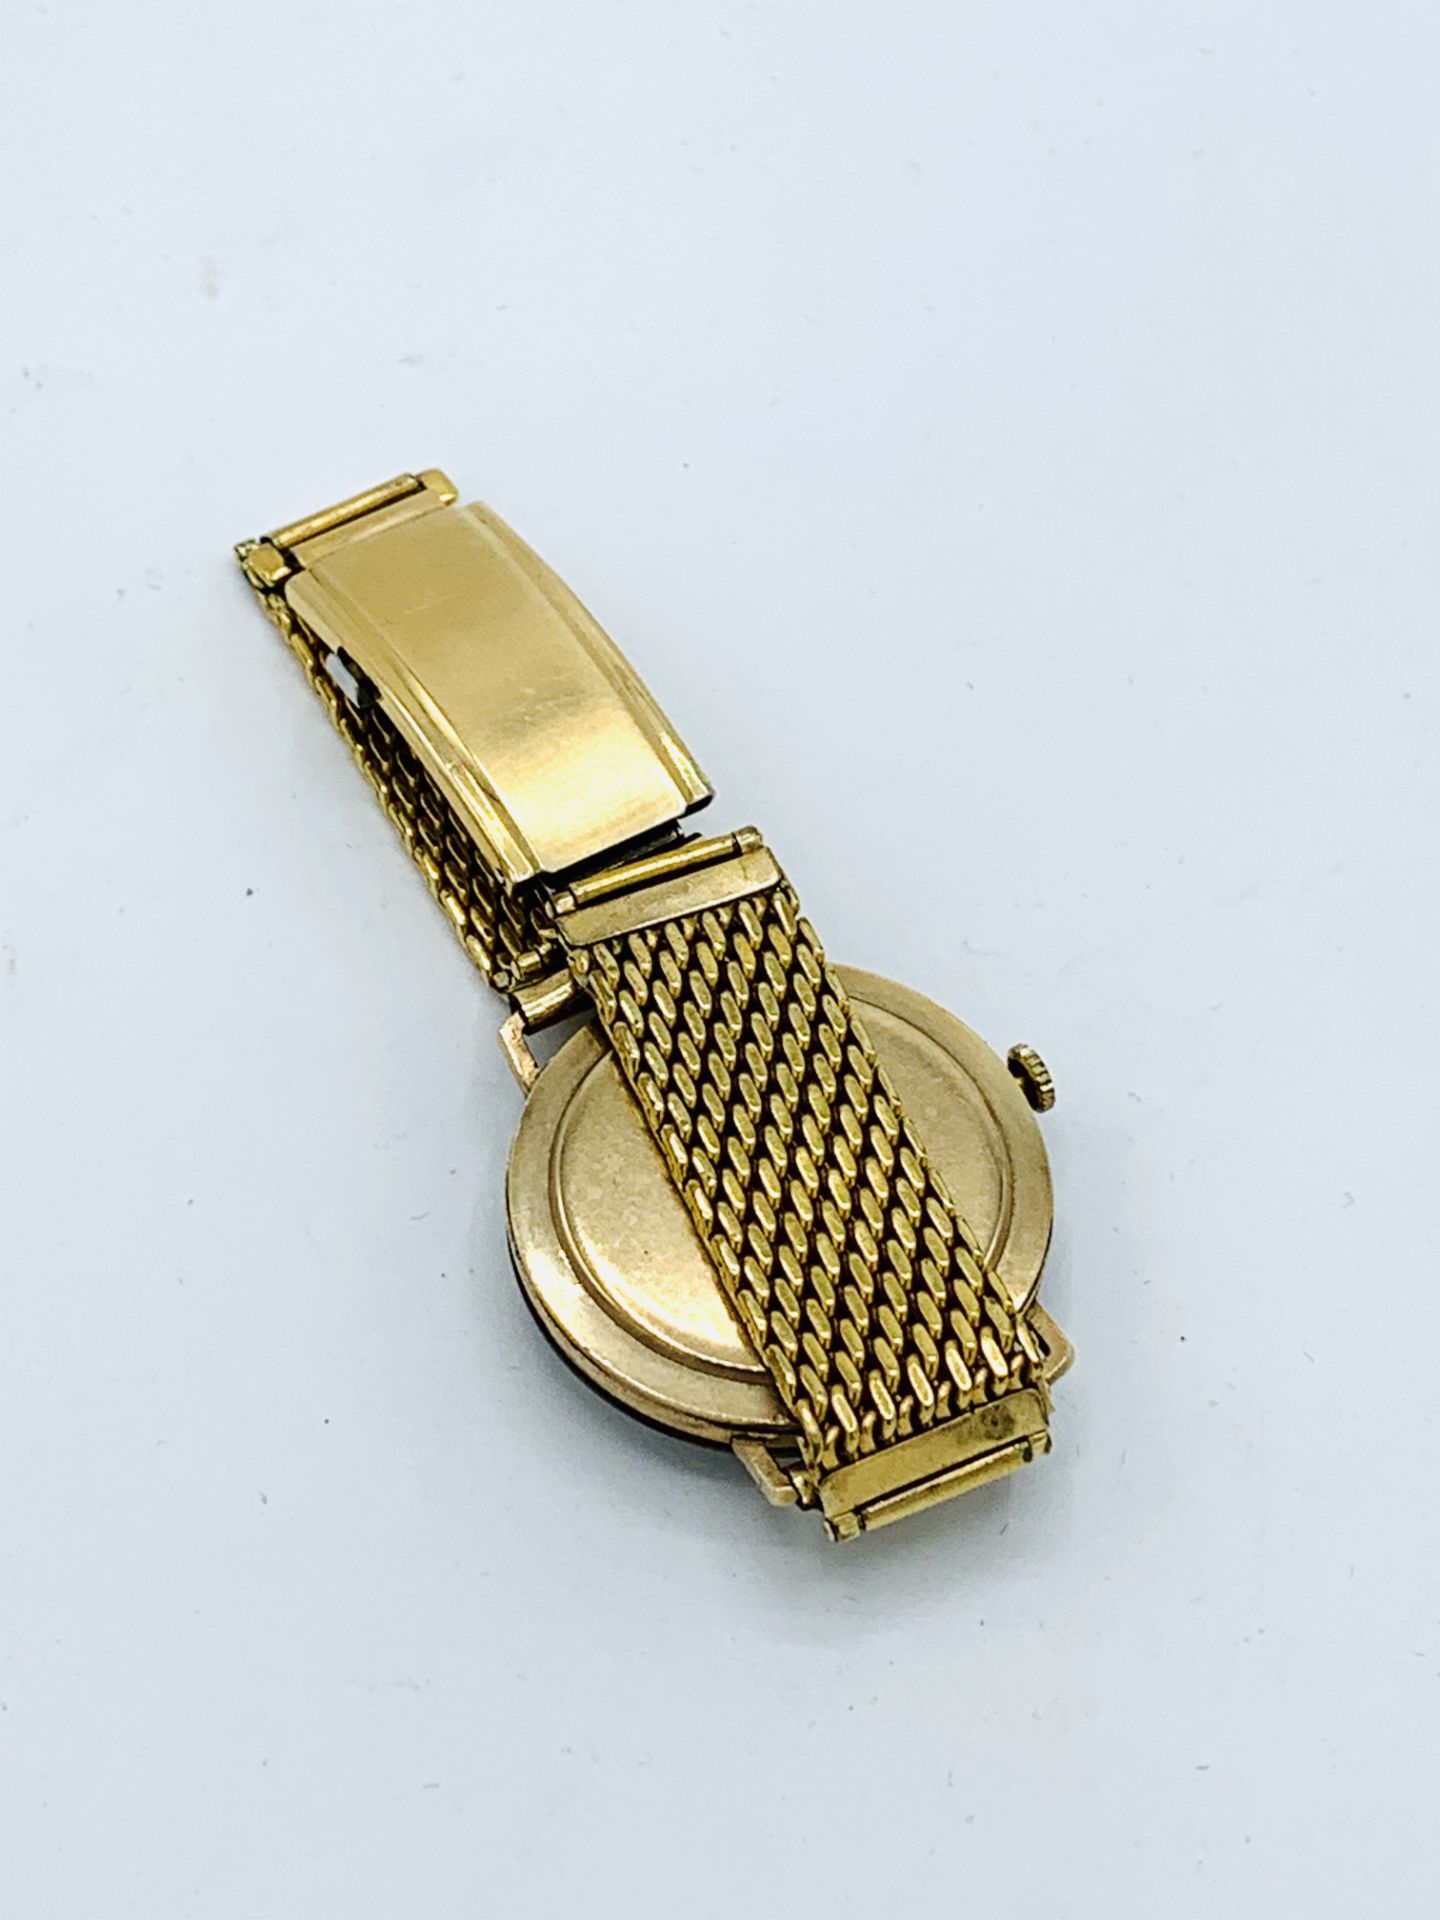 Garrard 9ct gold case wrist watch, going - Image 2 of 3